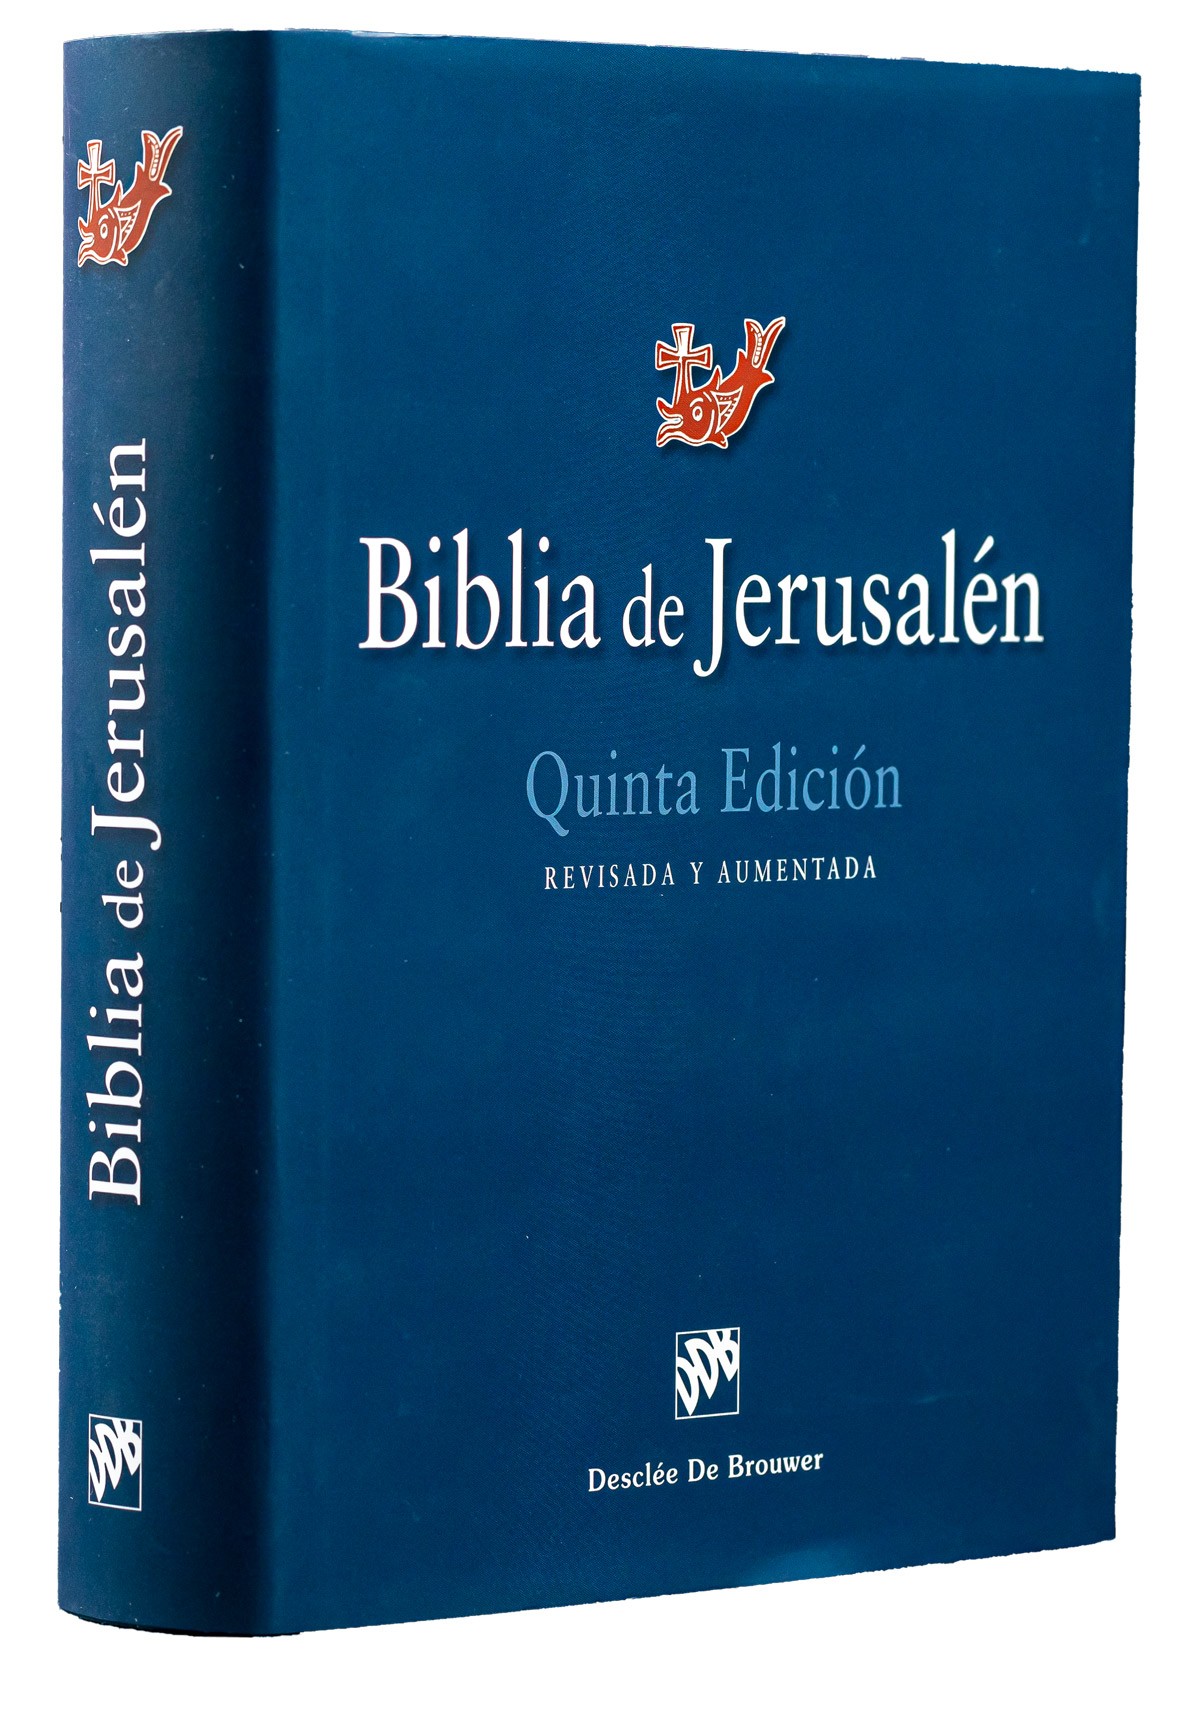 Biblia de Jerusalén (De estudio) 5ª edición 